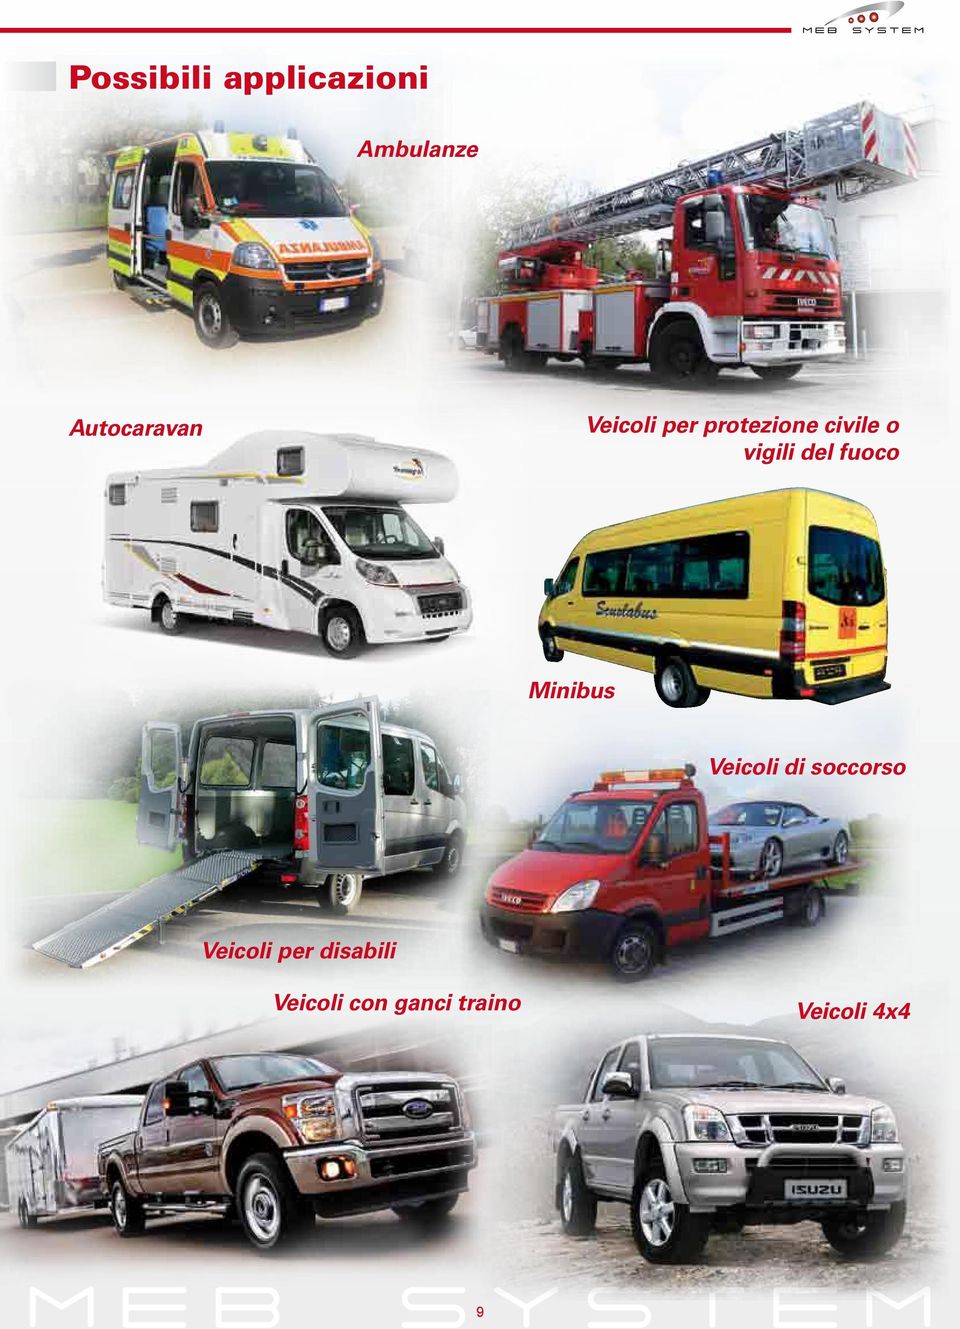 fuoco Minibus Veicoli di soccorso Veicoli per